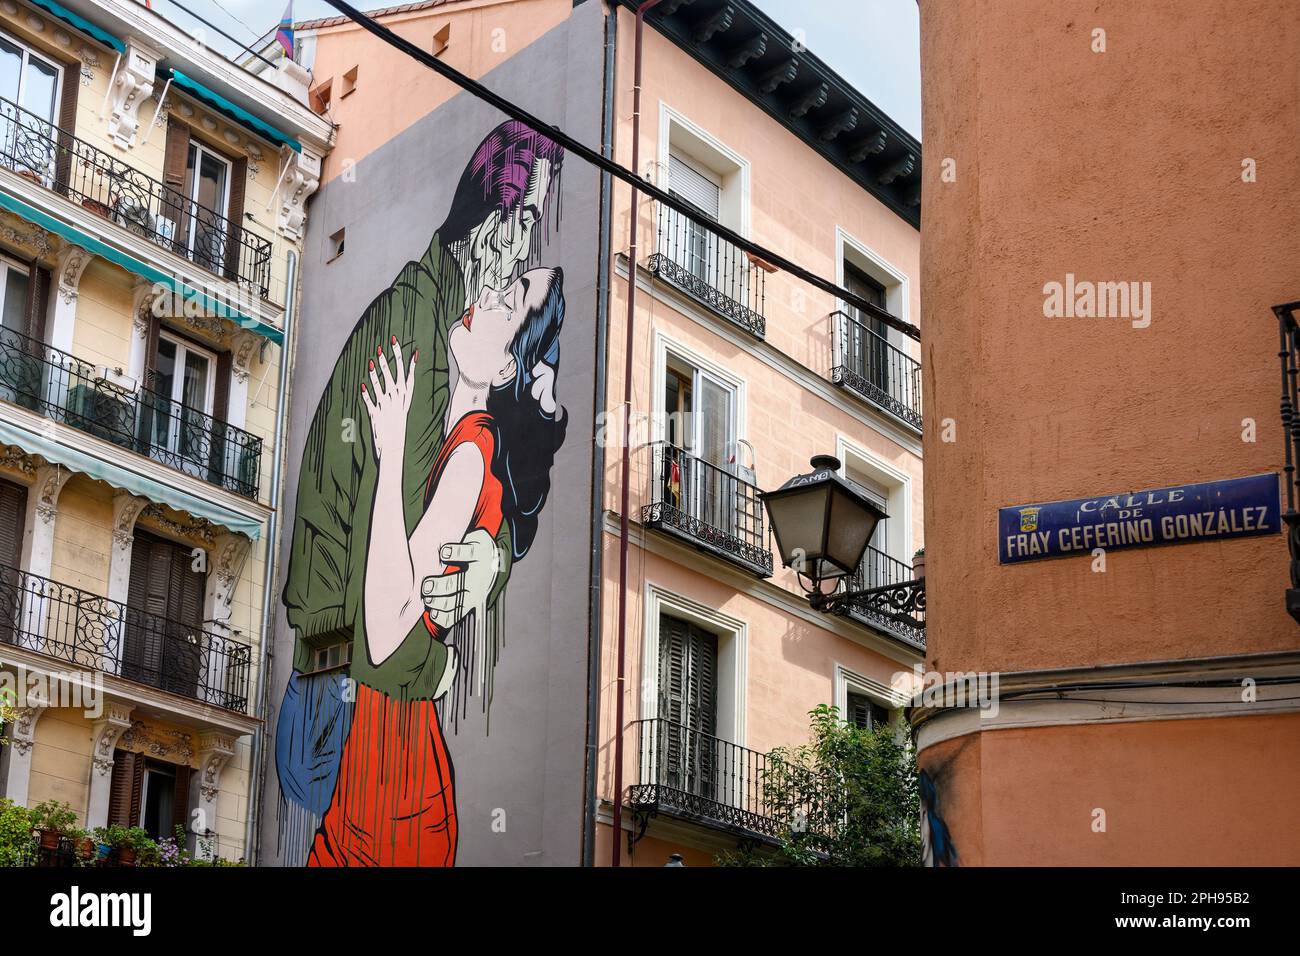 Wandgemälde genannt Run Away vom Künstler D*Face auf einem Gebäude in der Calle de Embajadores, im multikulturellen Viertel Embajadores, Zentrum von Madrid, Spanien Stockfoto